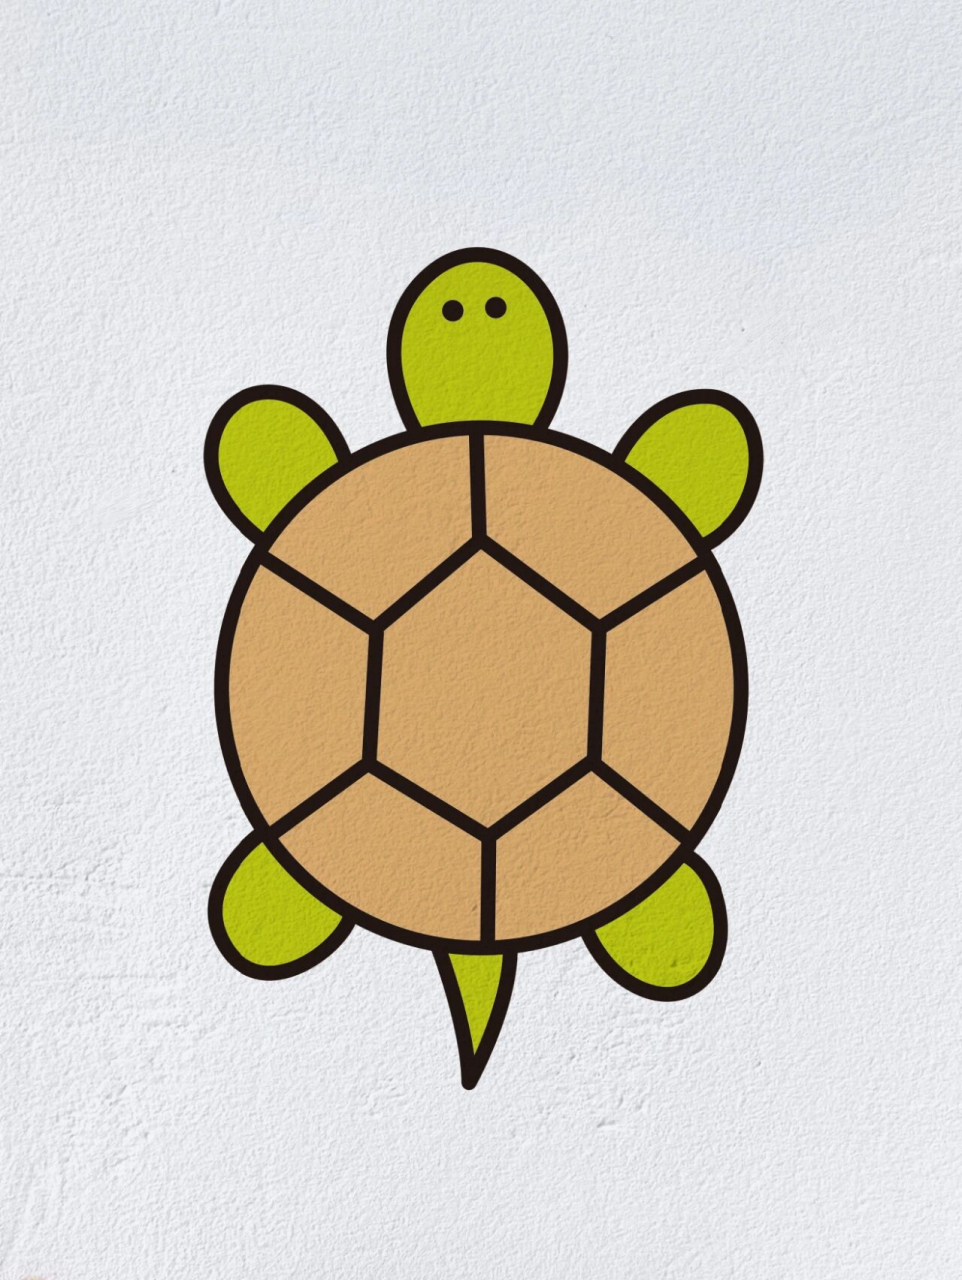 乌龟的简笔画彩色图片